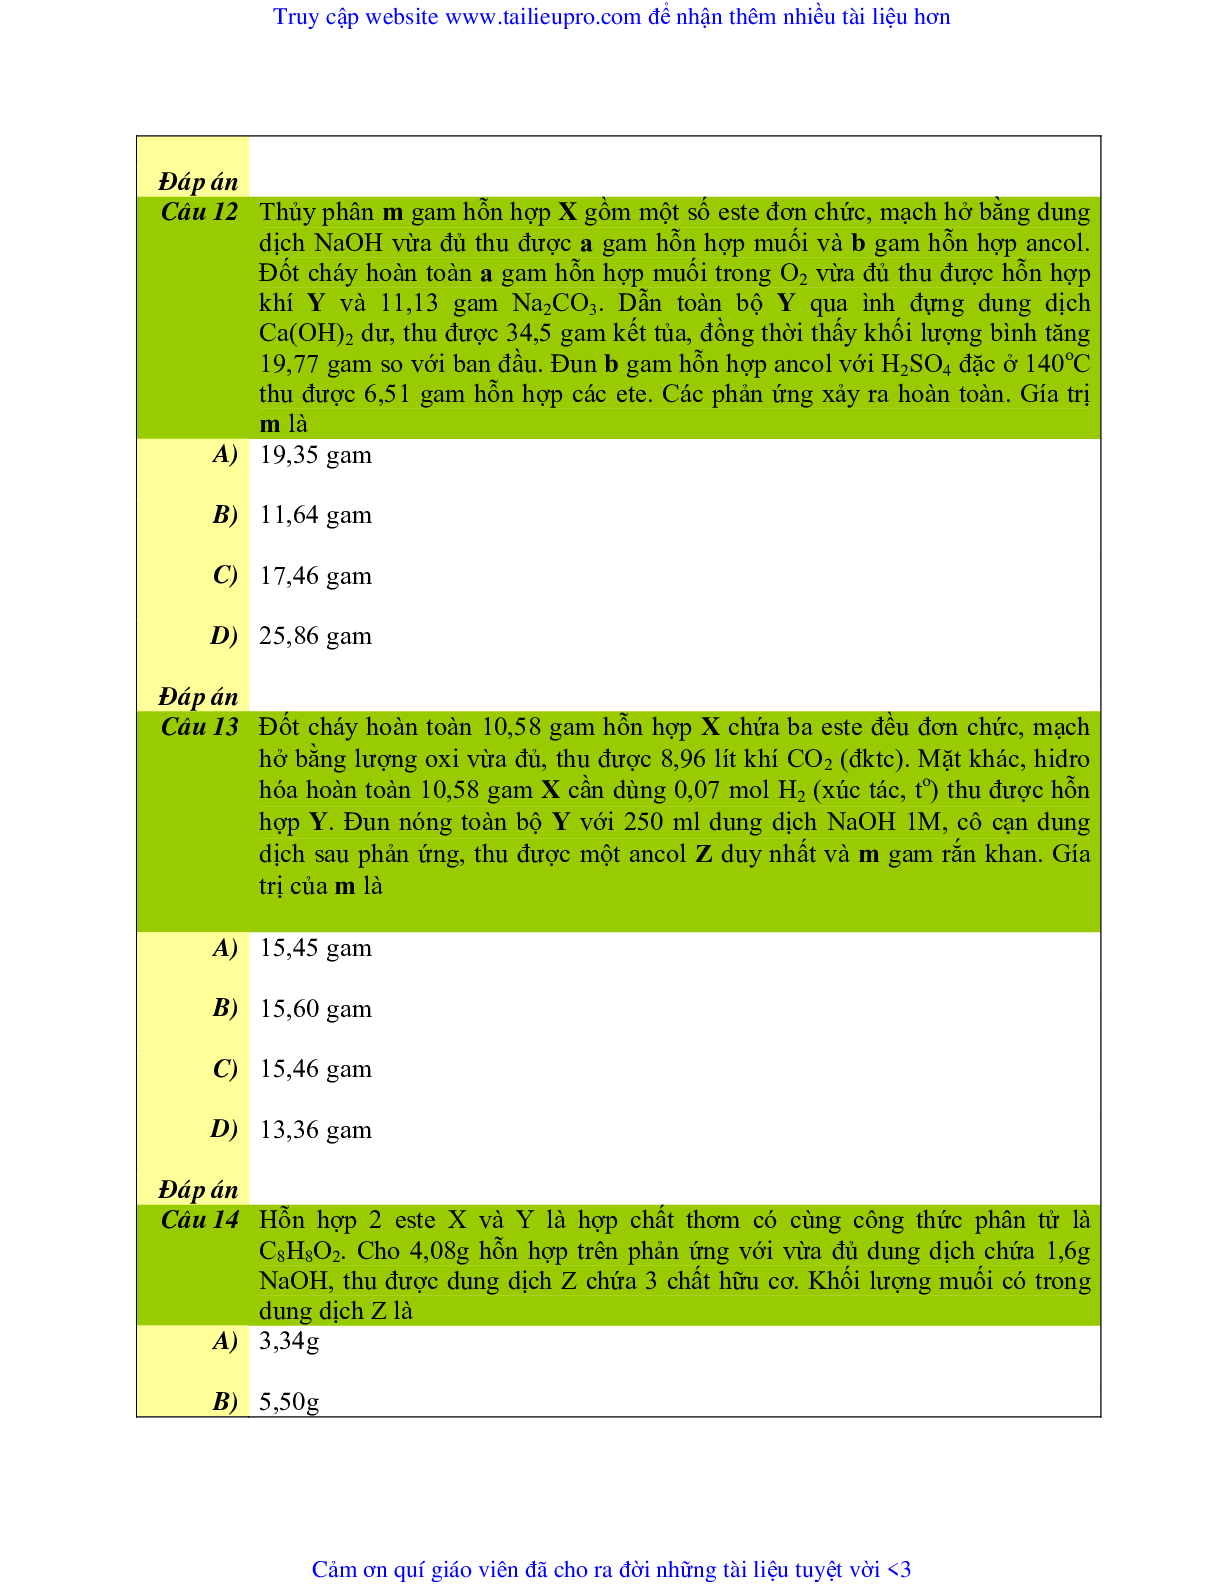 Chuyên đề  Este môn Hóa học lớp 12 (trang 5)